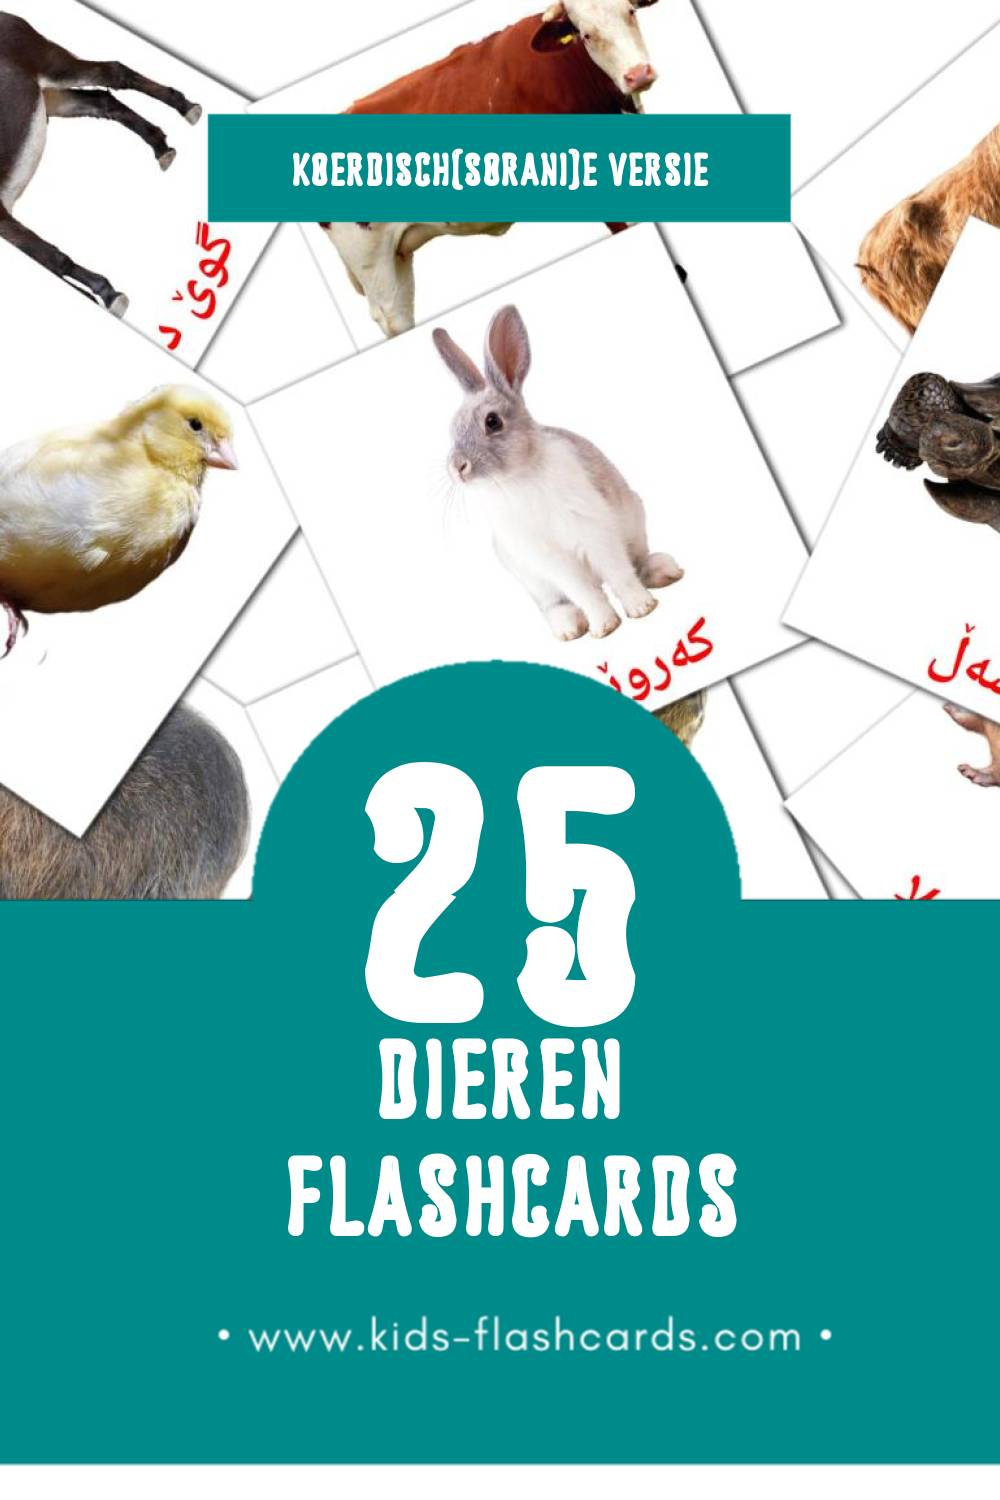 Visuele ئاژەڵەکان  Flashcards voor Kleuters (25 kaarten in het Koerdisch(sorani))